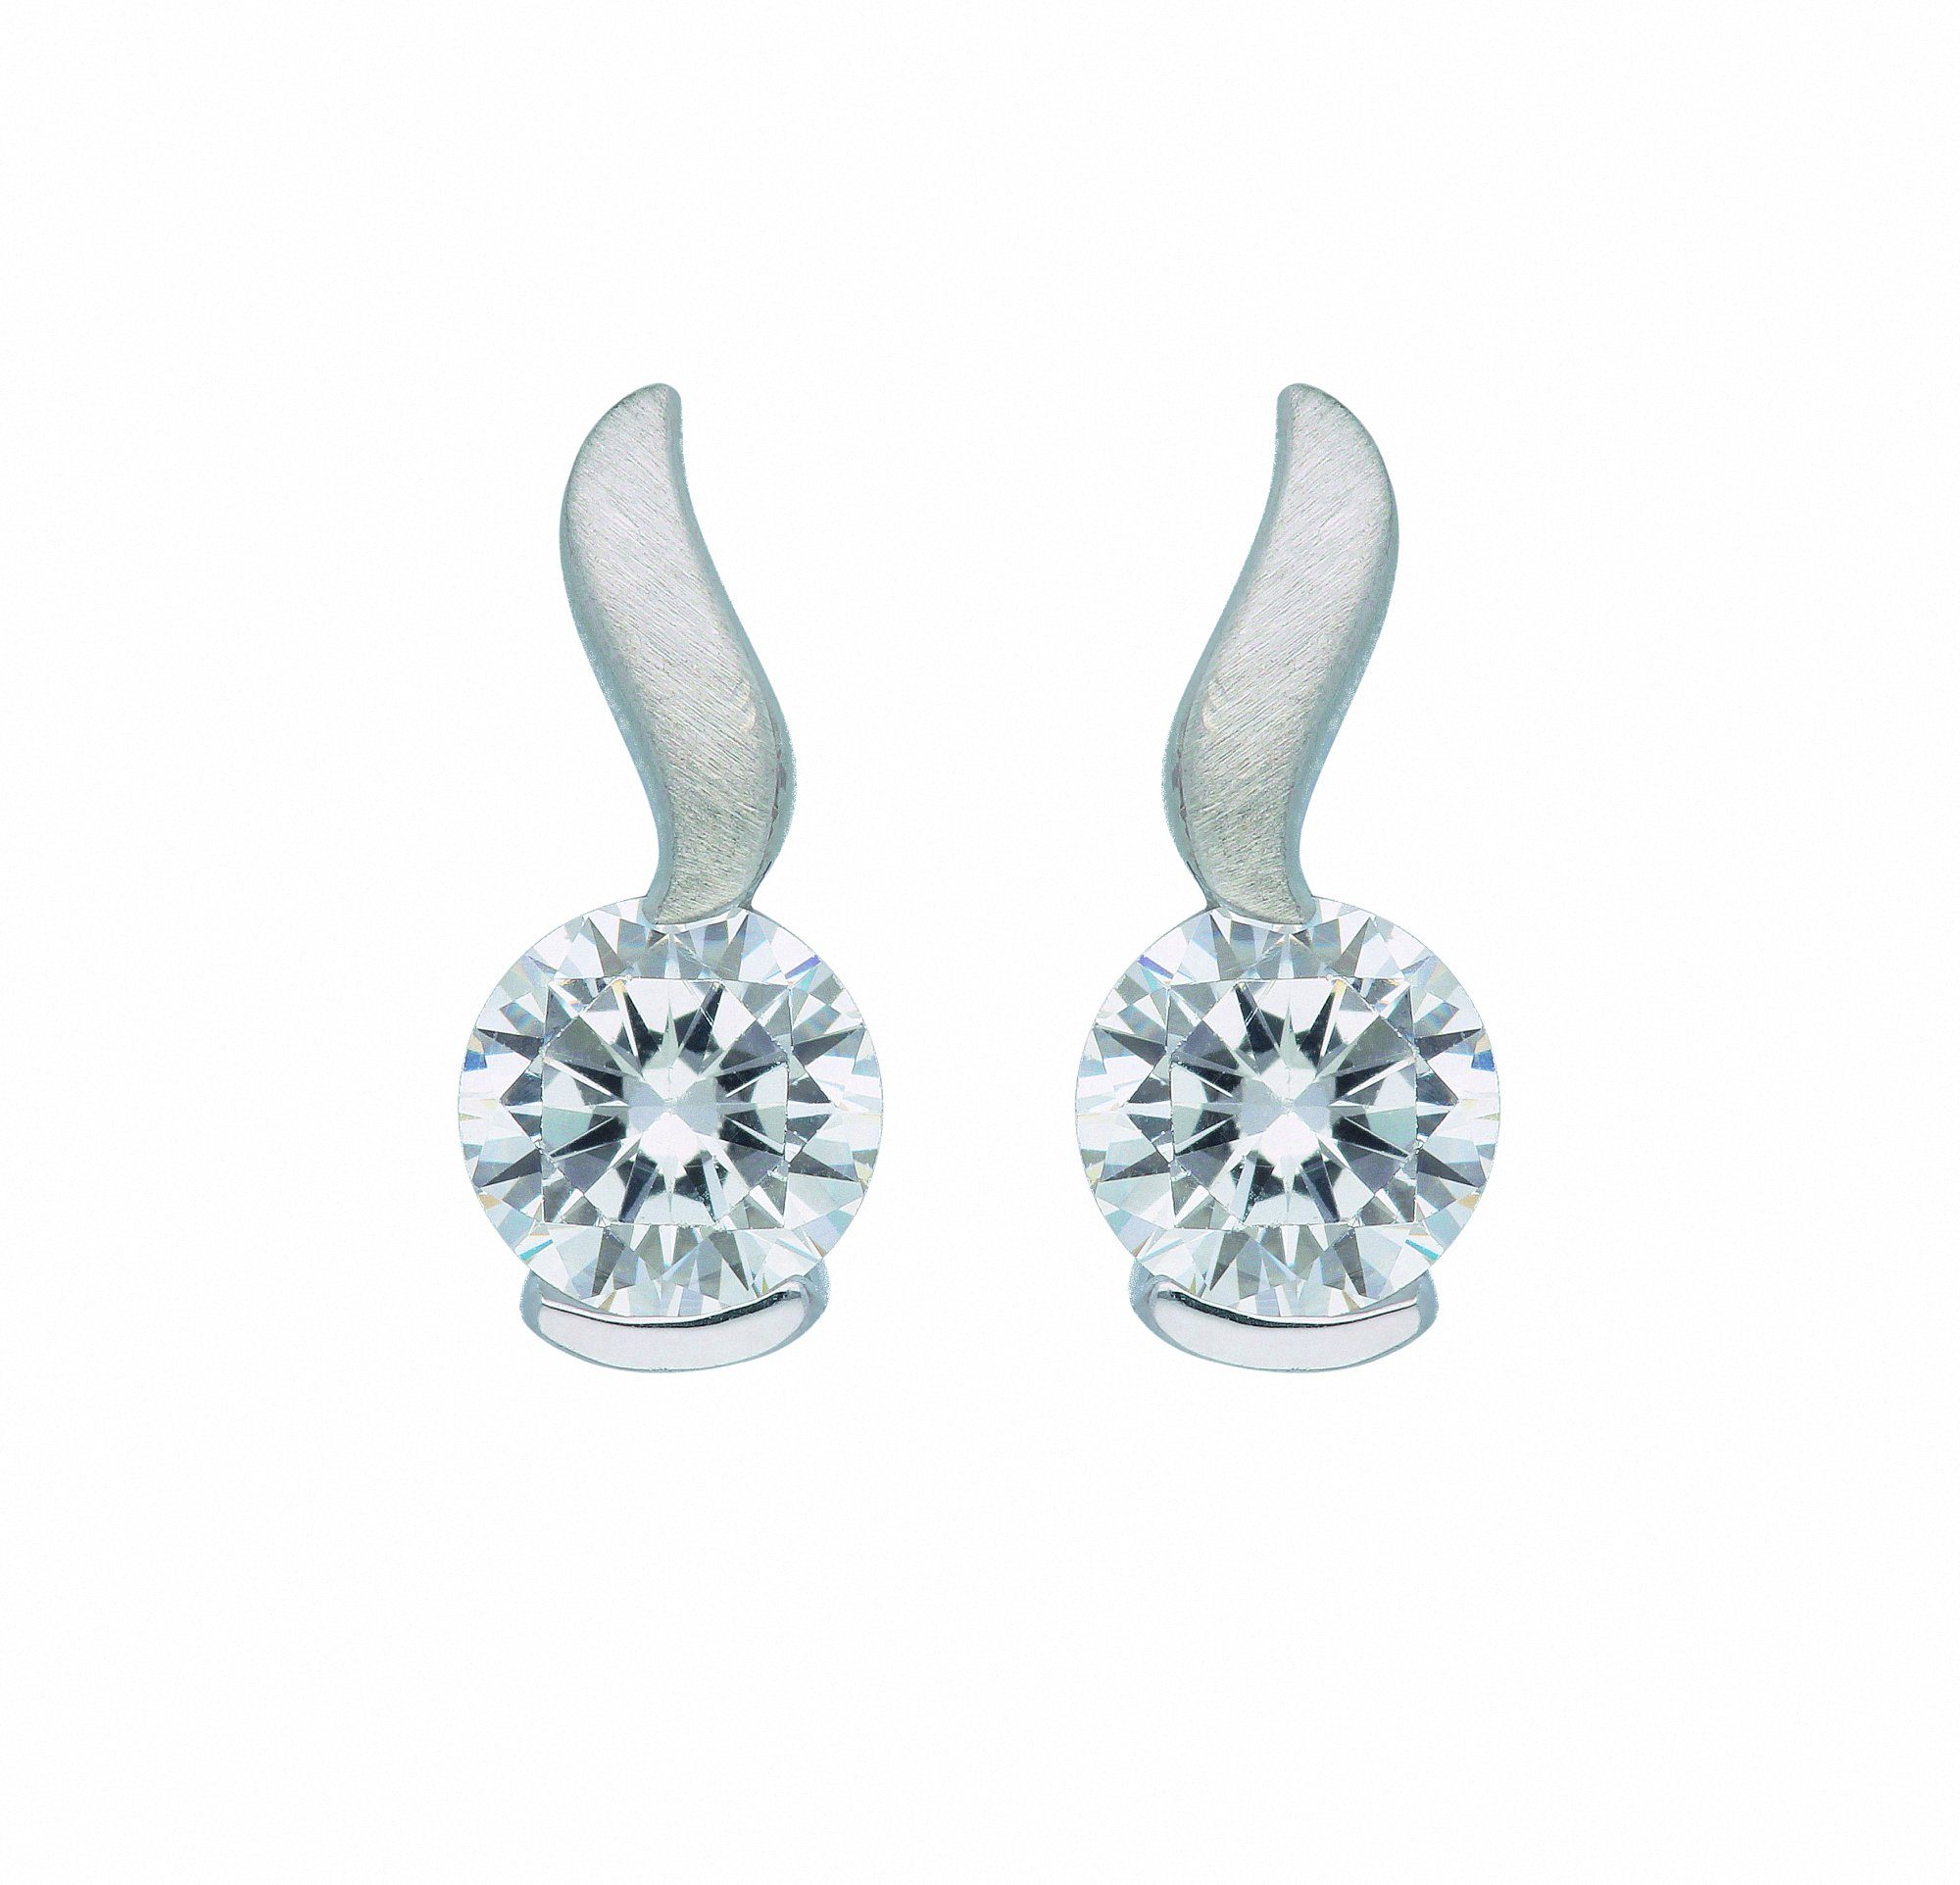 Adelia´s Paar Ohrhänger 1 Paar 925 Silber Ohrringe / Ohrstecker mit Zirkonia,  mit Zirkonia Silberschmuck für Damen, Maße - Breite 5 mm - Höhe 11,7 mm